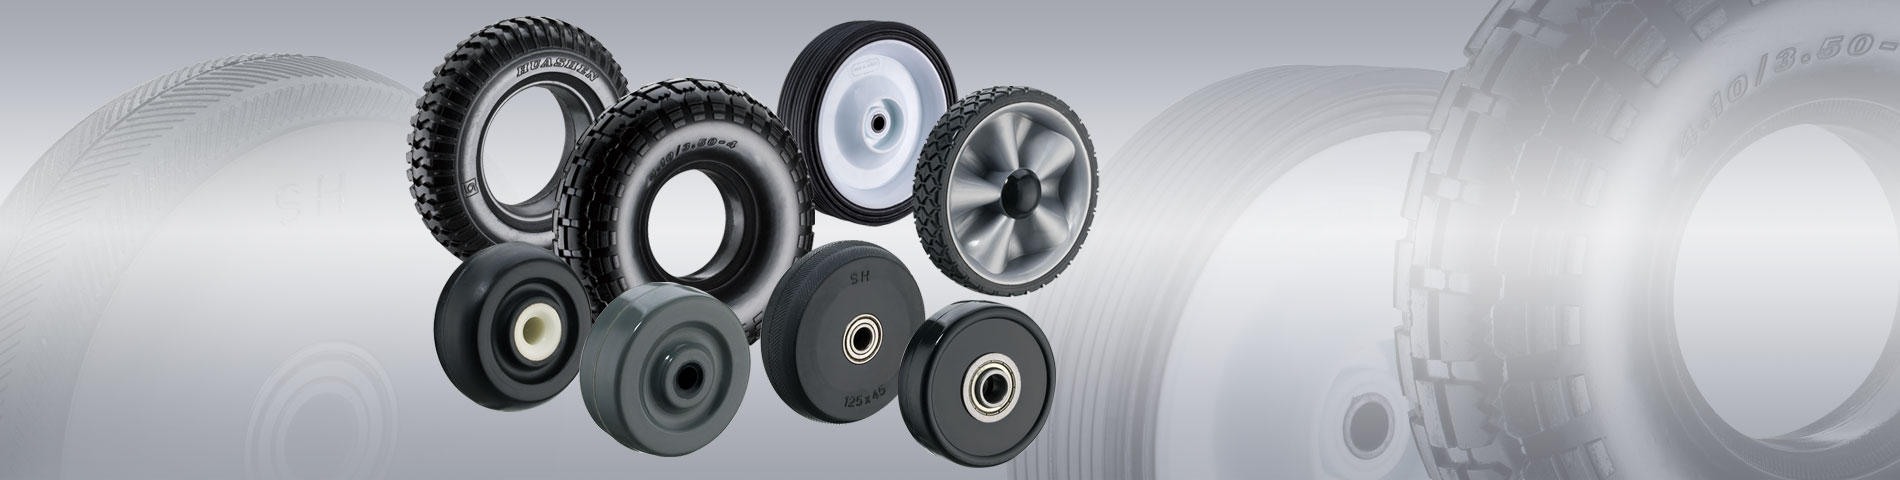 华伸橡胶 提供您多样性的 橡胶轮制造